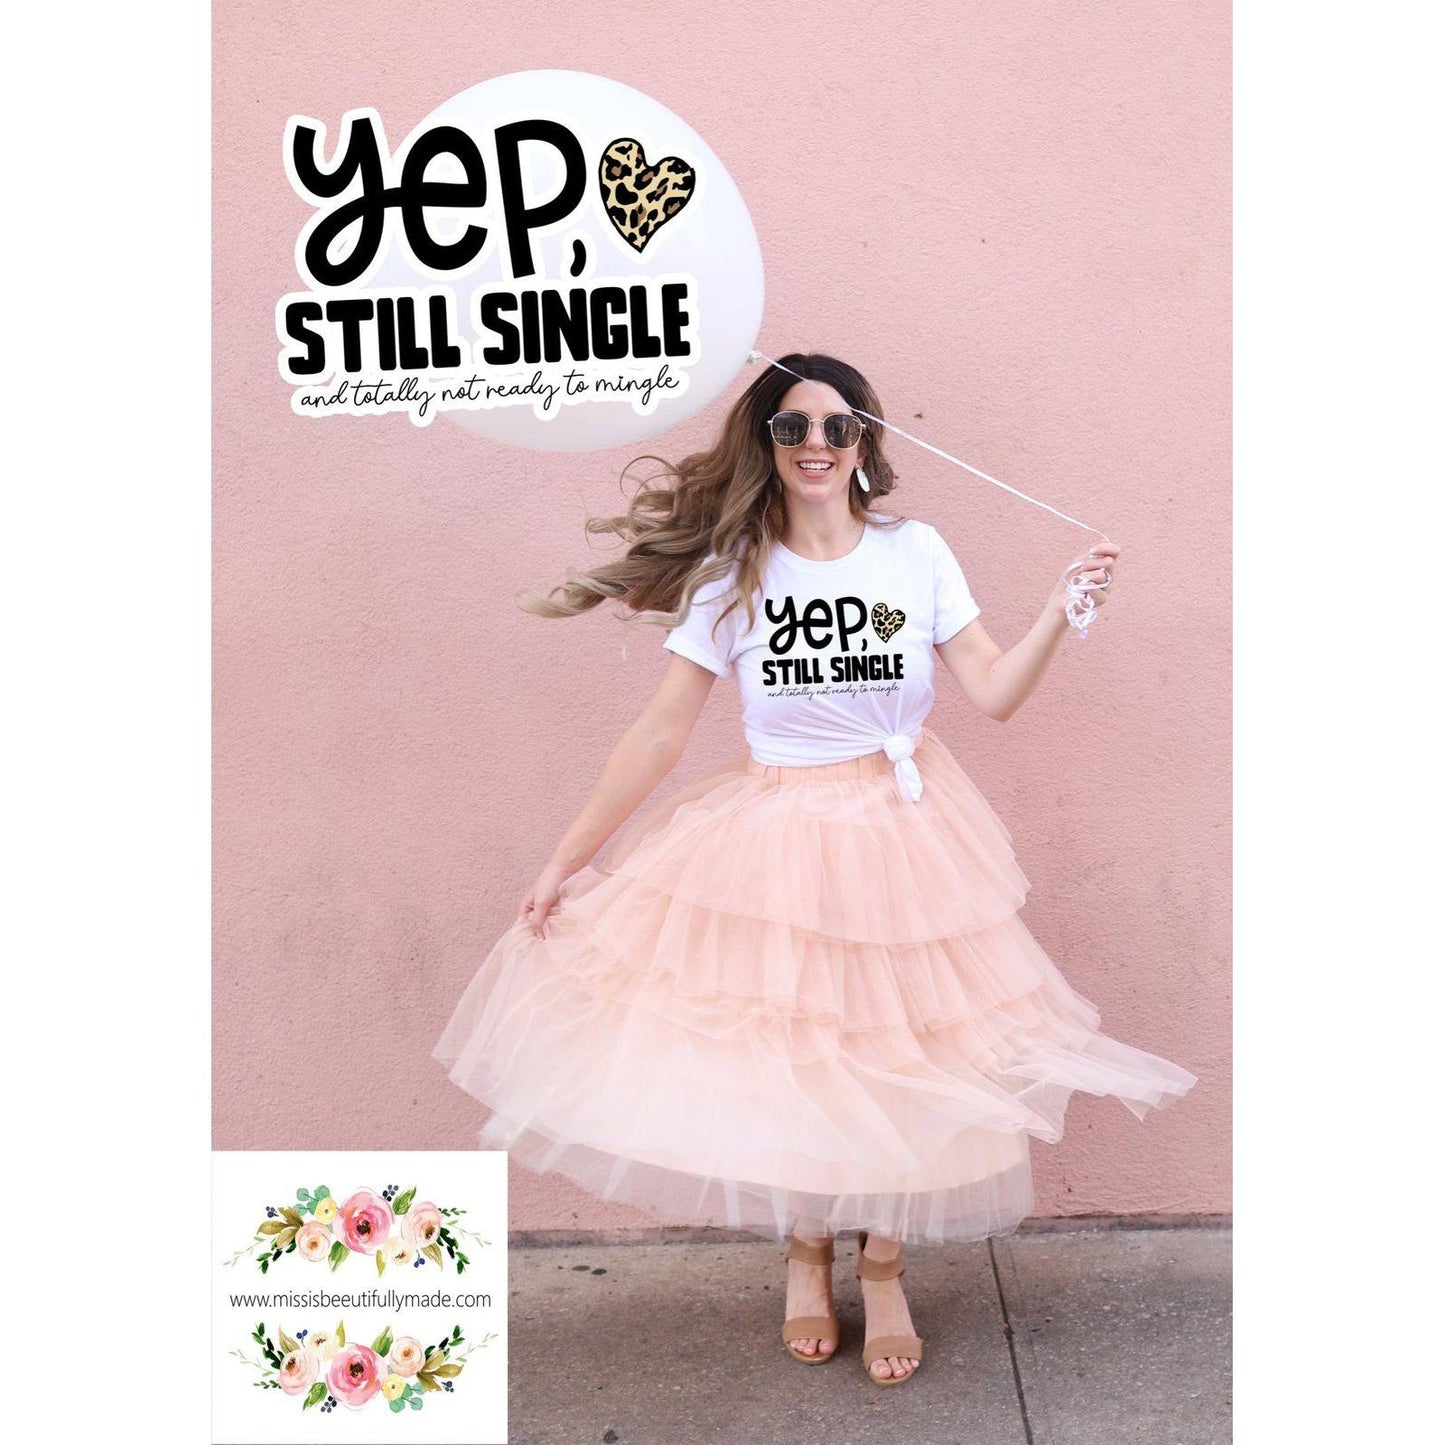 T-shirt - Yep still single and totally not ready to mingle